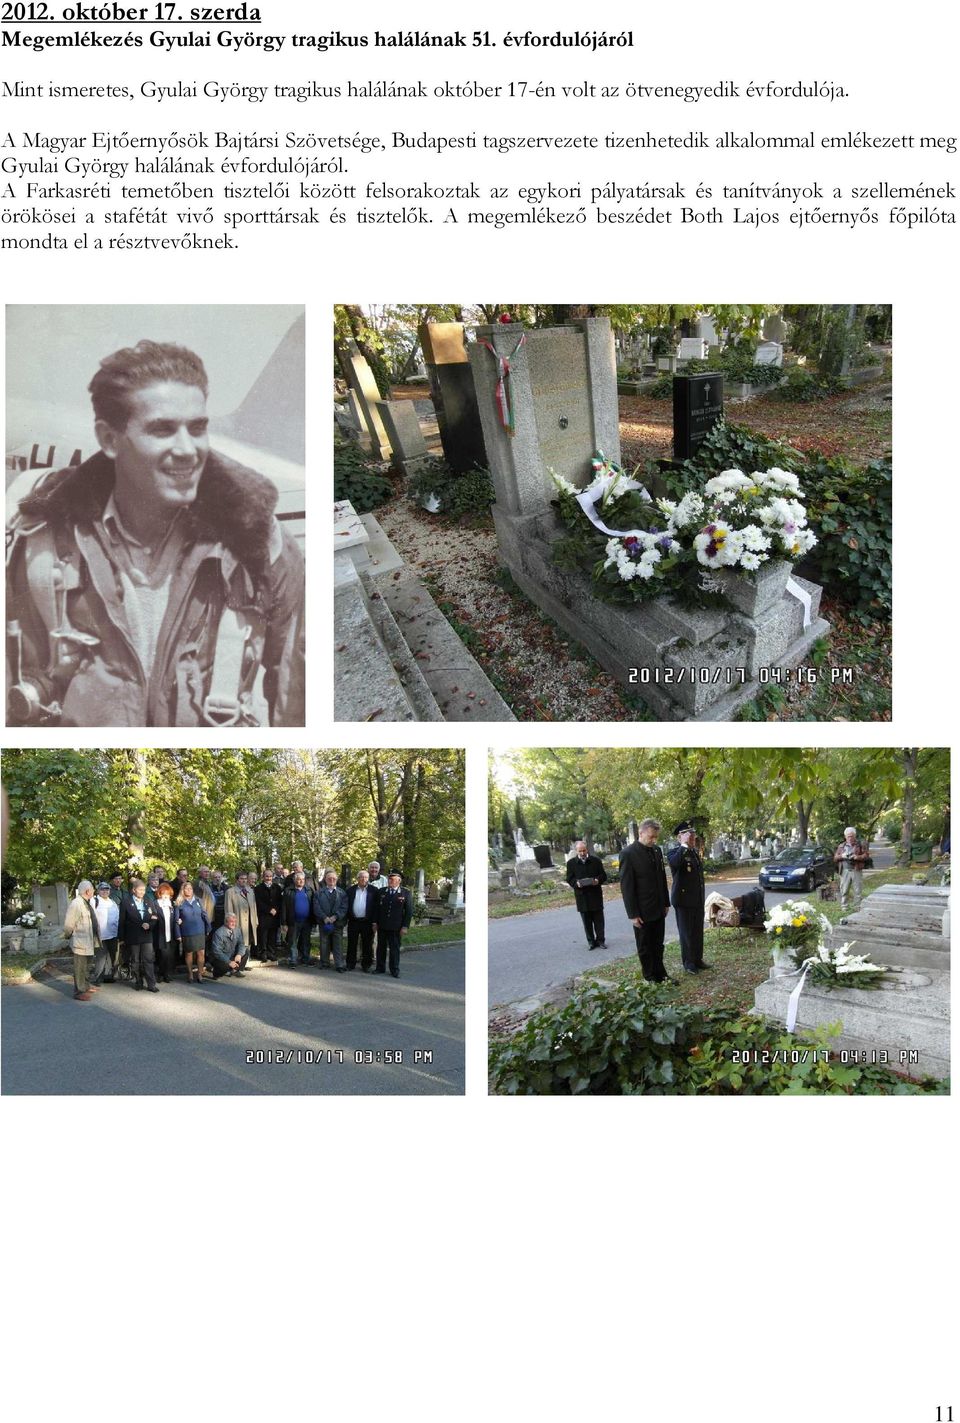 A Magyar Ejtőernyősök Bajtársi Szövetsége, Budapesti tagszervezete tizenhetedik alkalommal emlékezett meg Gyulai György halálának